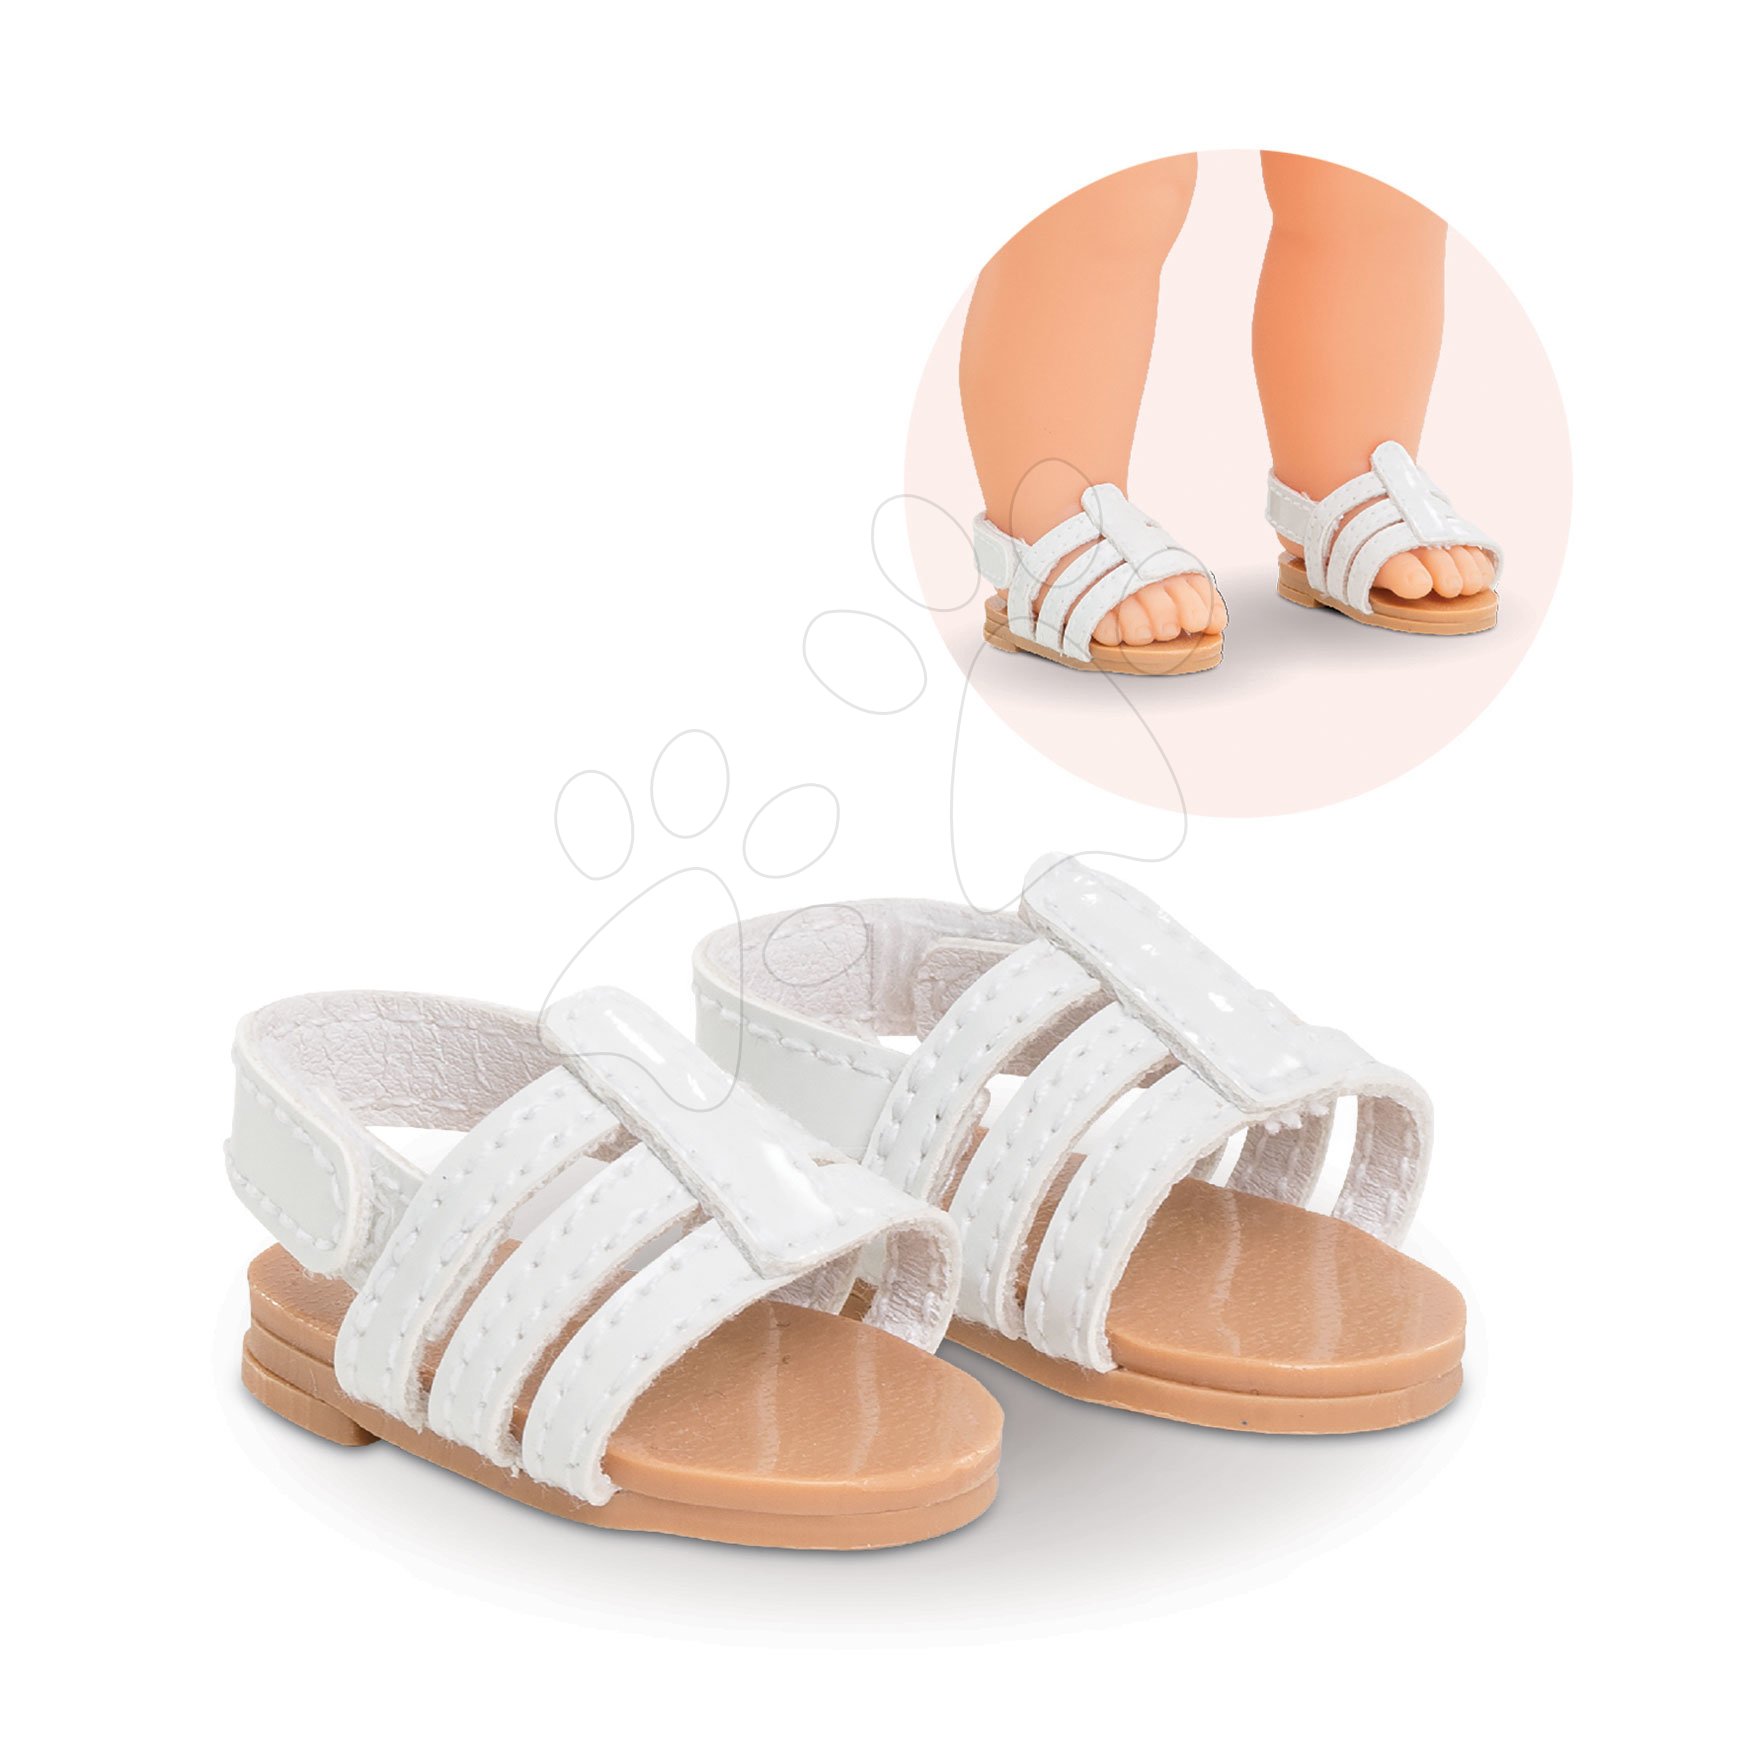 Oblečenie pre bábiky - Topánky Sandals Ma Corolle pre 36 cm bábiku od 4 rokov